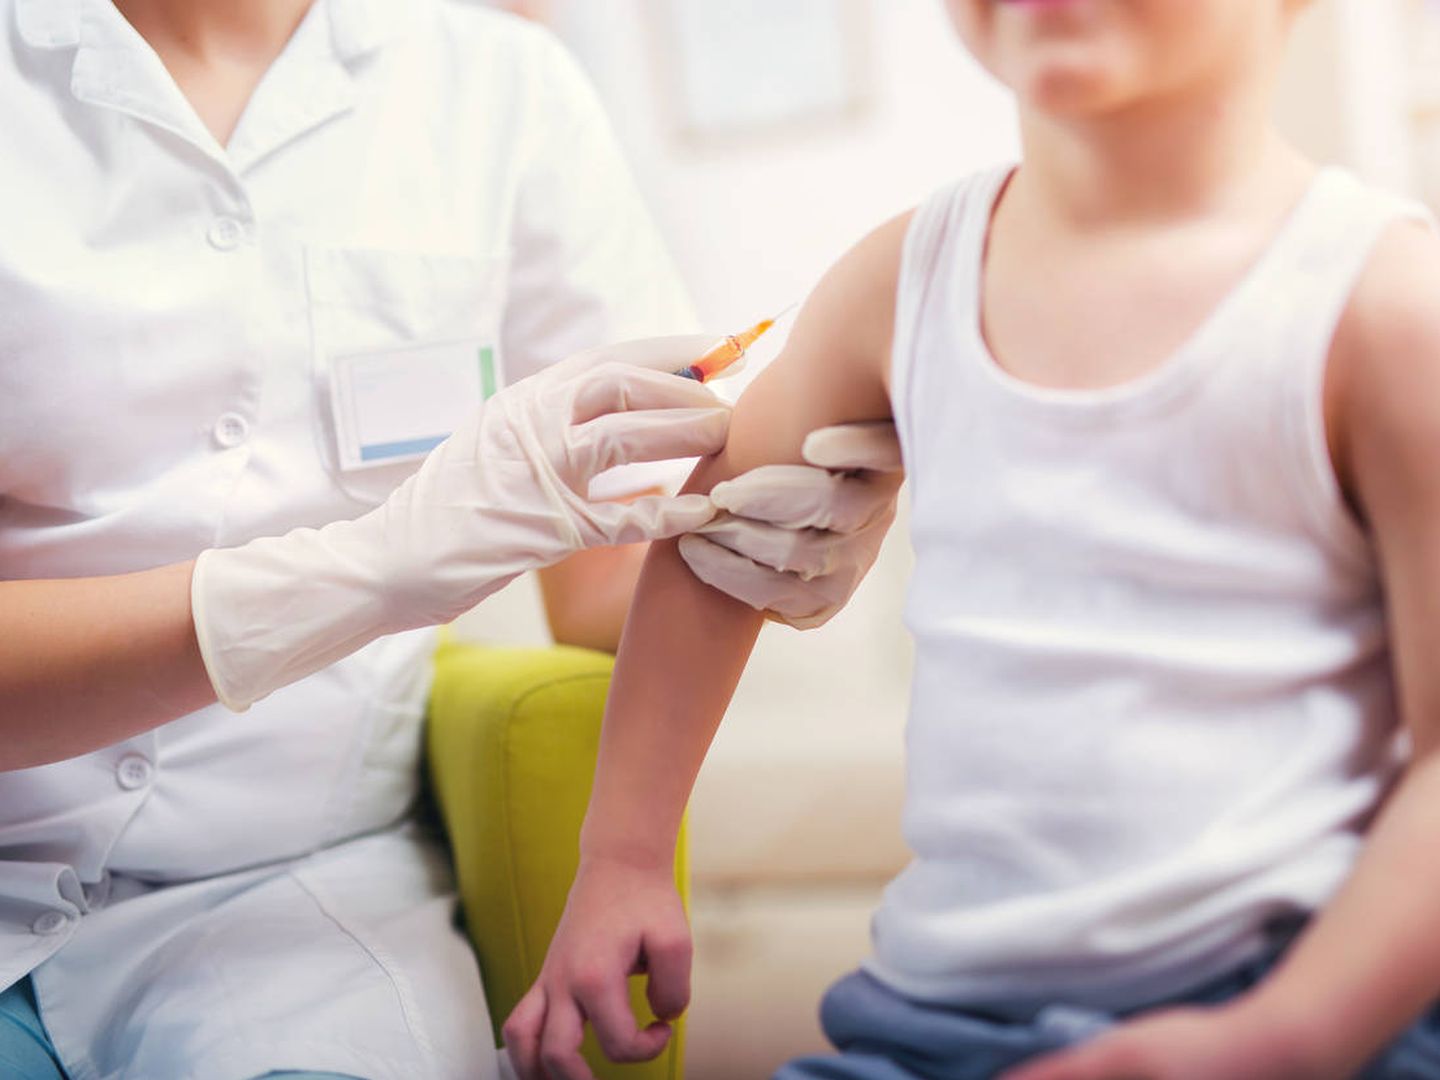 Un pediatra suministra una vacuna a un niño. (iStock)